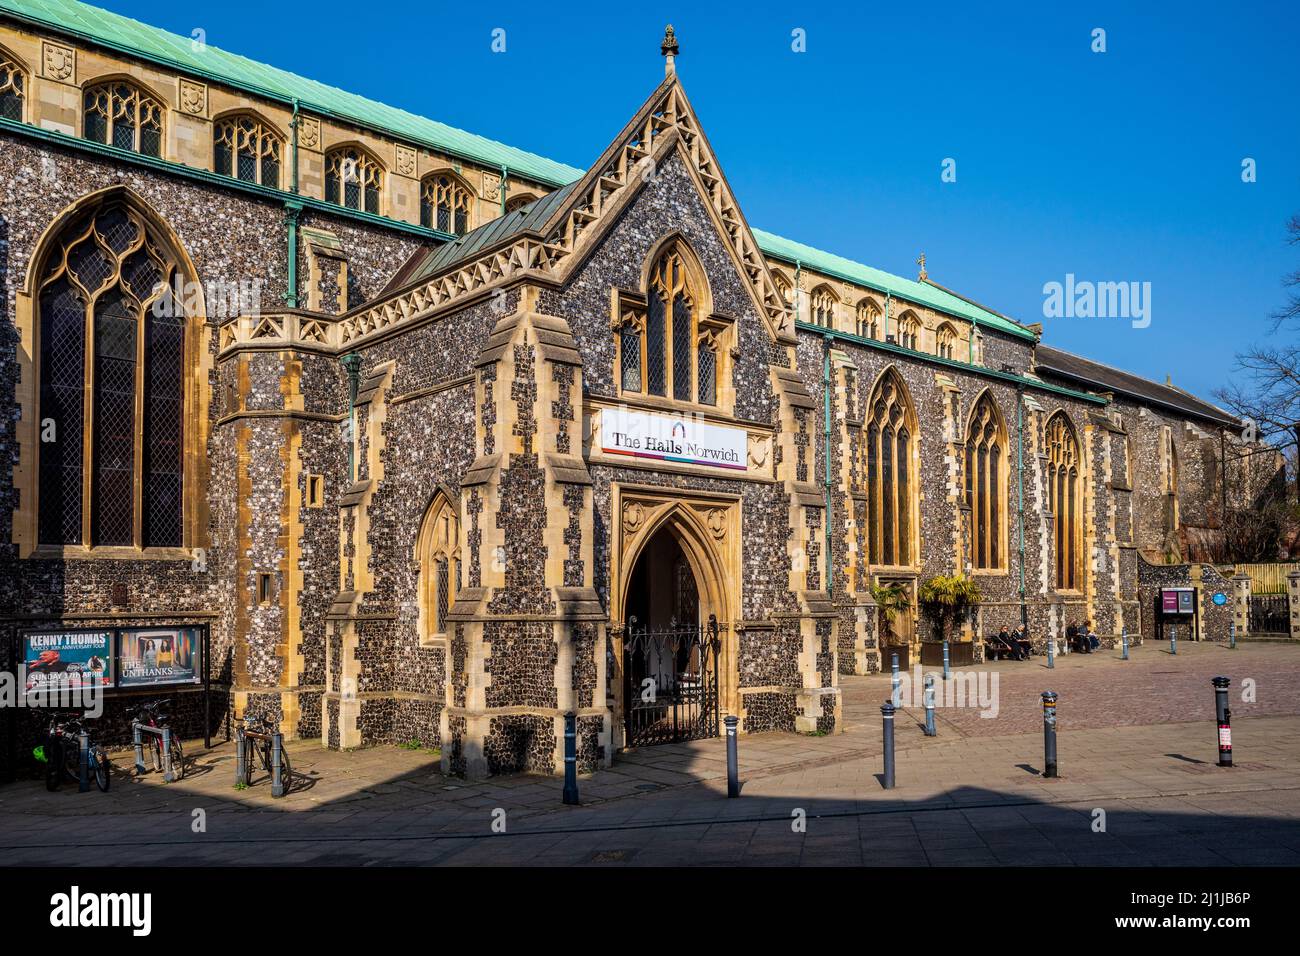 Die Hallen Norwich, Norfolk. Ein kompletter mittelalterlicher Klosterkomplex aus dem 14.. Jahrhundert, der heute als Veranstaltungsort im Stadtzentrum von Norwich genutzt wird. Stockfoto